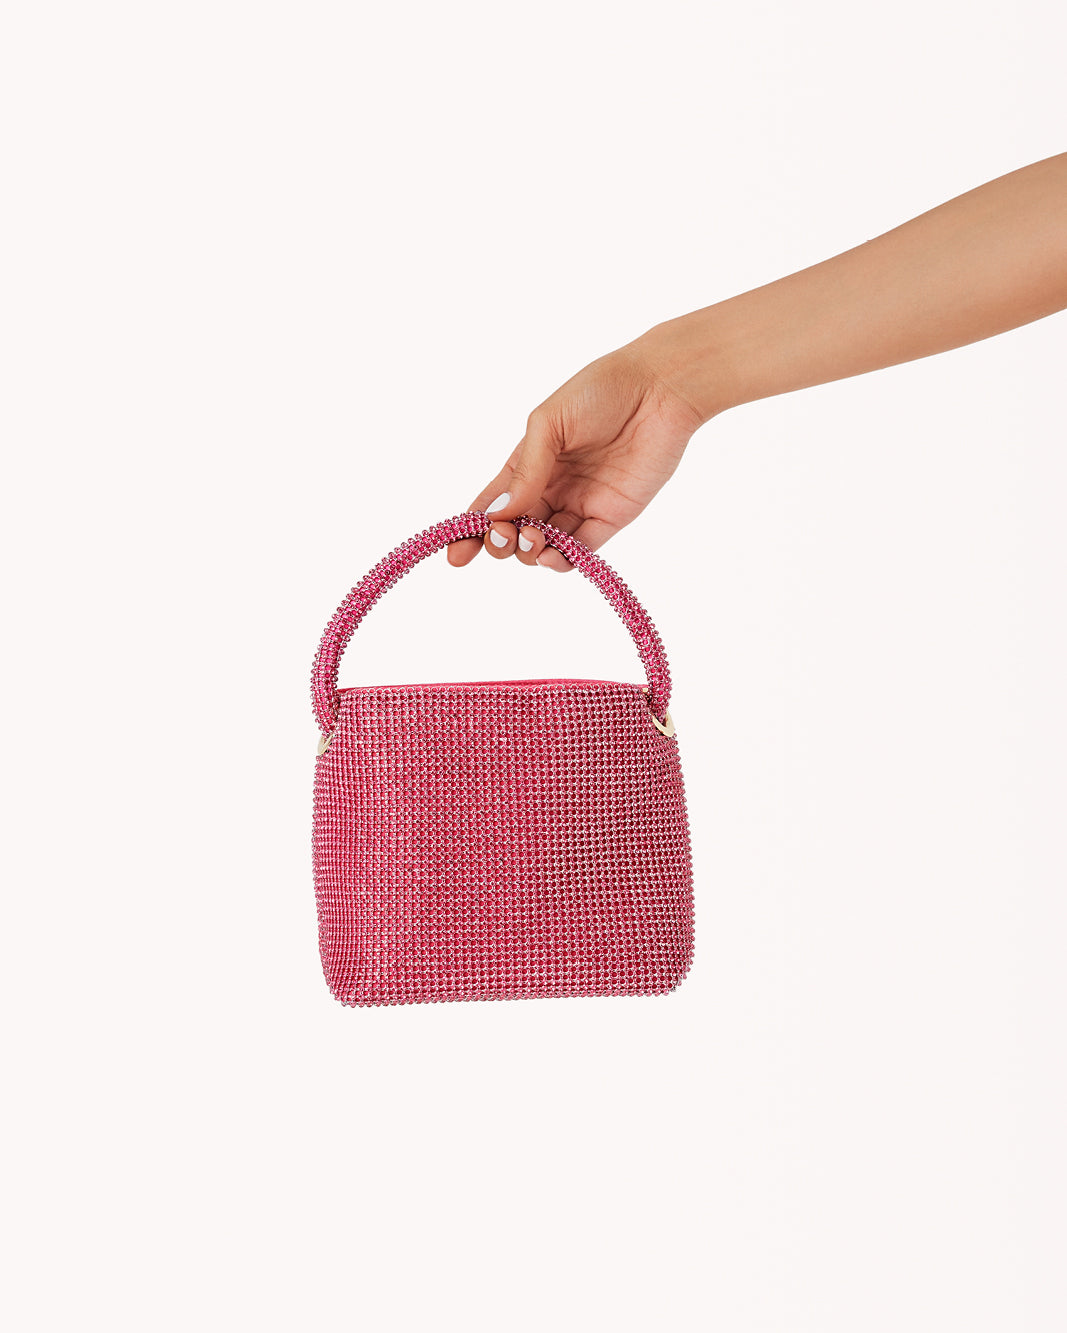 TANI HANDLE BAG - PINK DIAMANTE - PINK-Handbags-Billini-O/S-Billini